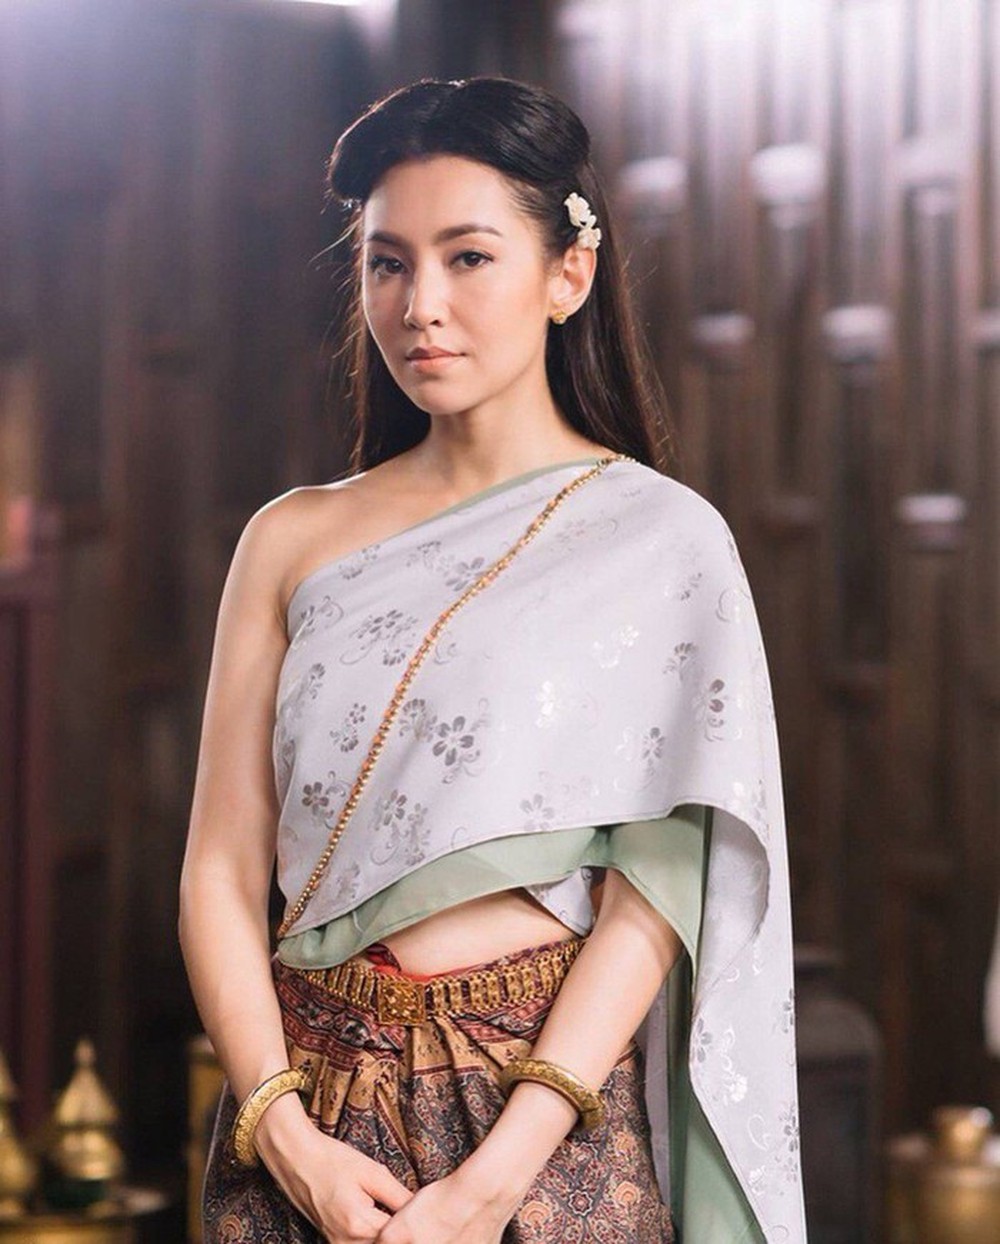 Cuộc sống đời thực của nữ hoàng cổ trang Thái Lan đang gây sốt màn ảnh Việt - Ảnh 5.